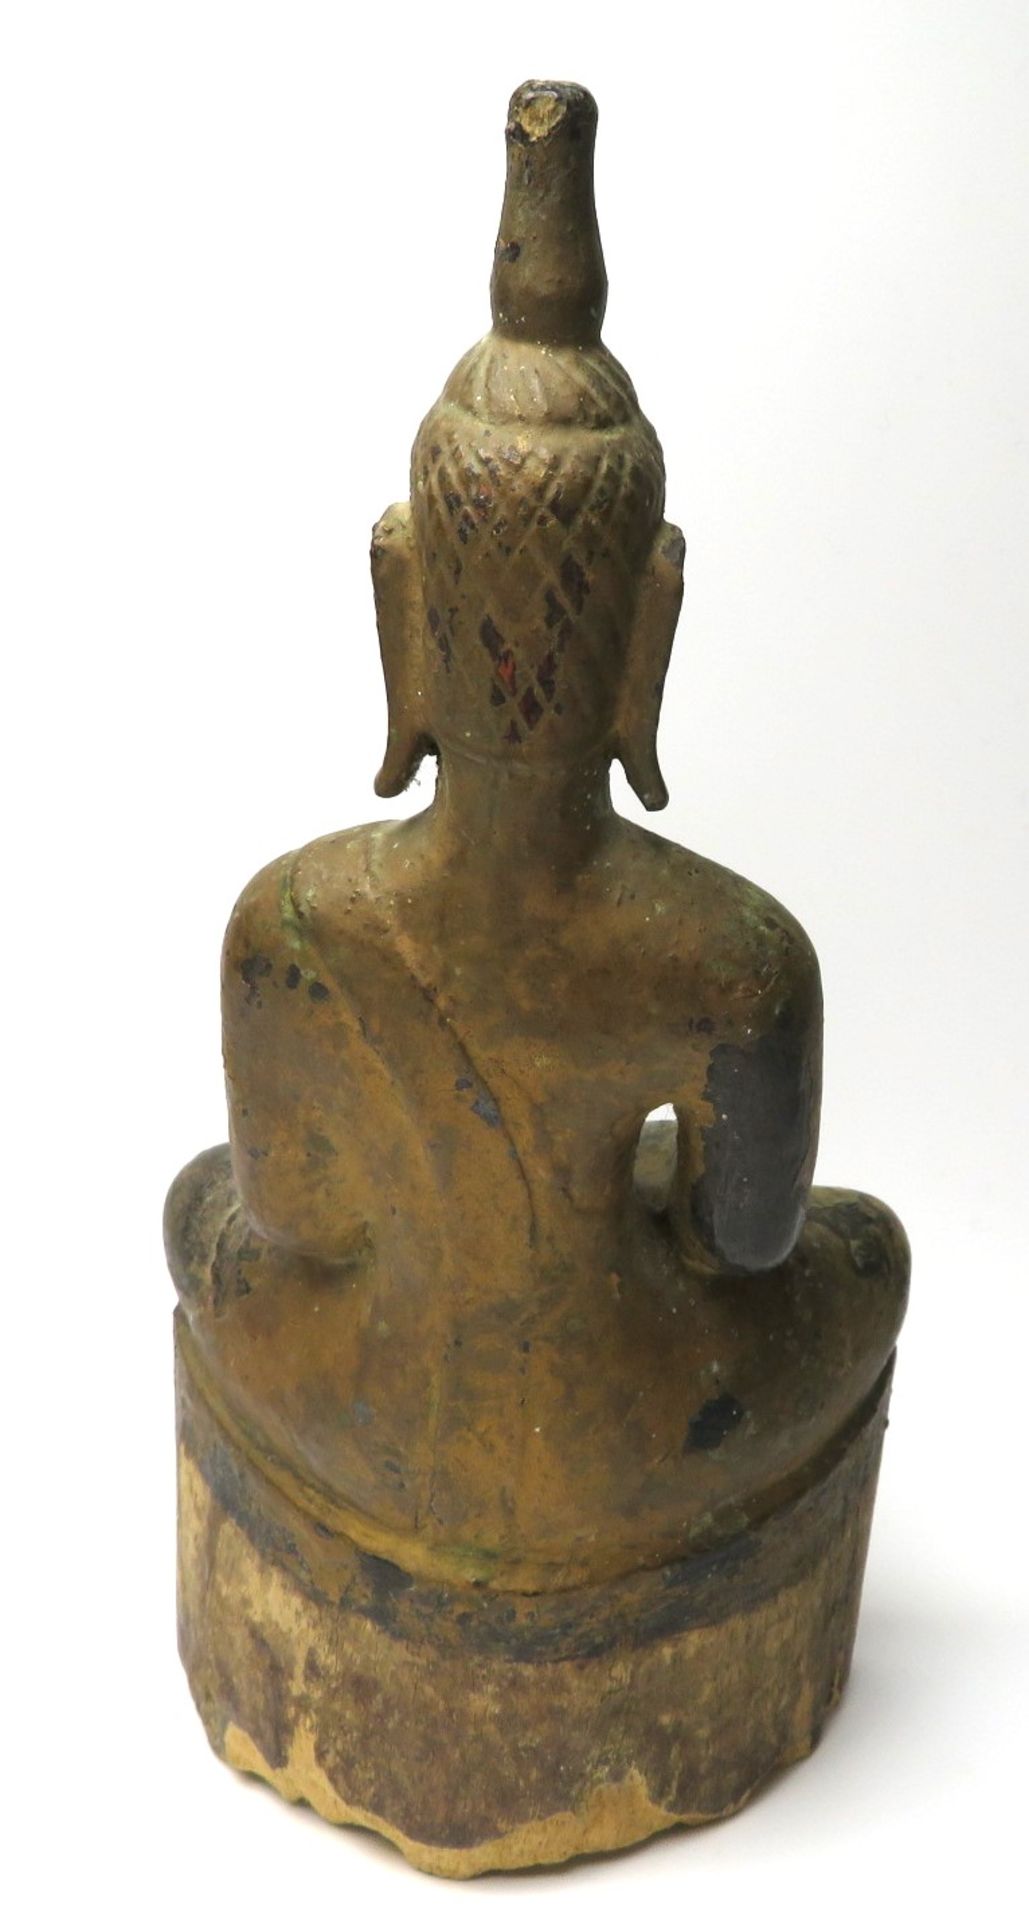 Sitzender Buddha im Lotussitz, Südostasien, antik, Holz geschnitzt, gefasst, best., 19,5 x 9,5 x 5, - Bild 2 aus 3